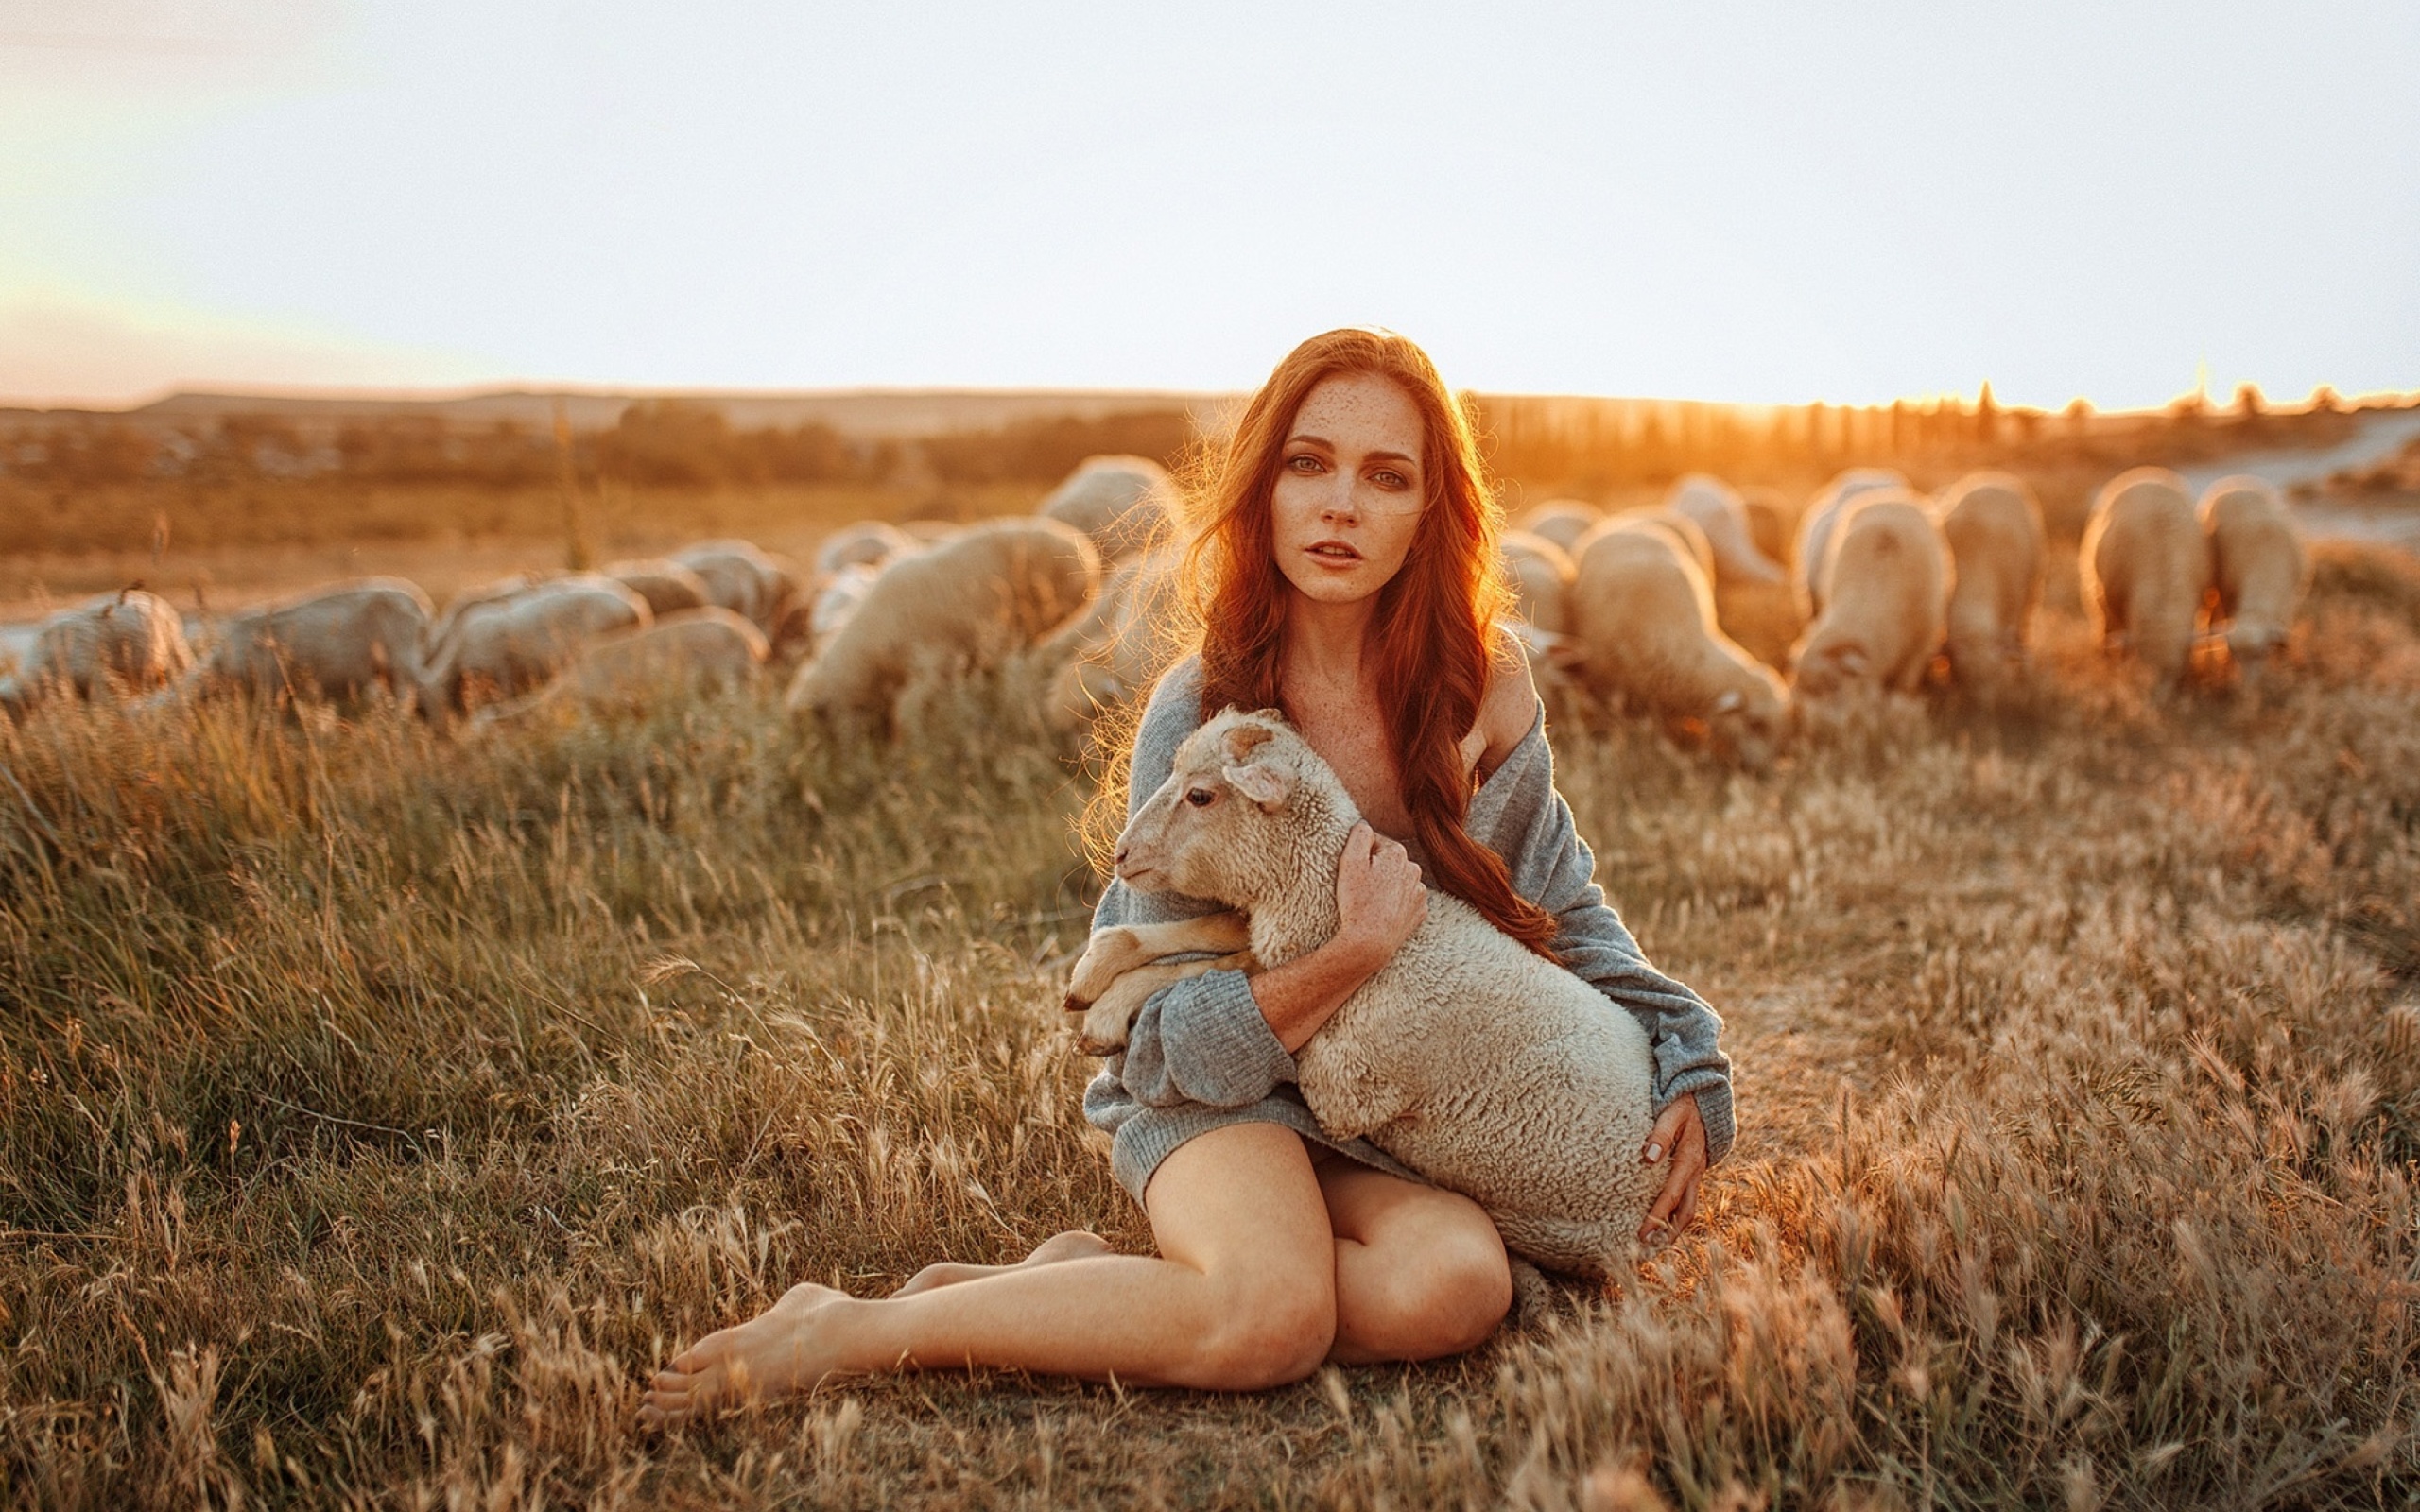 Обои Girl with Sheep 2560x1600